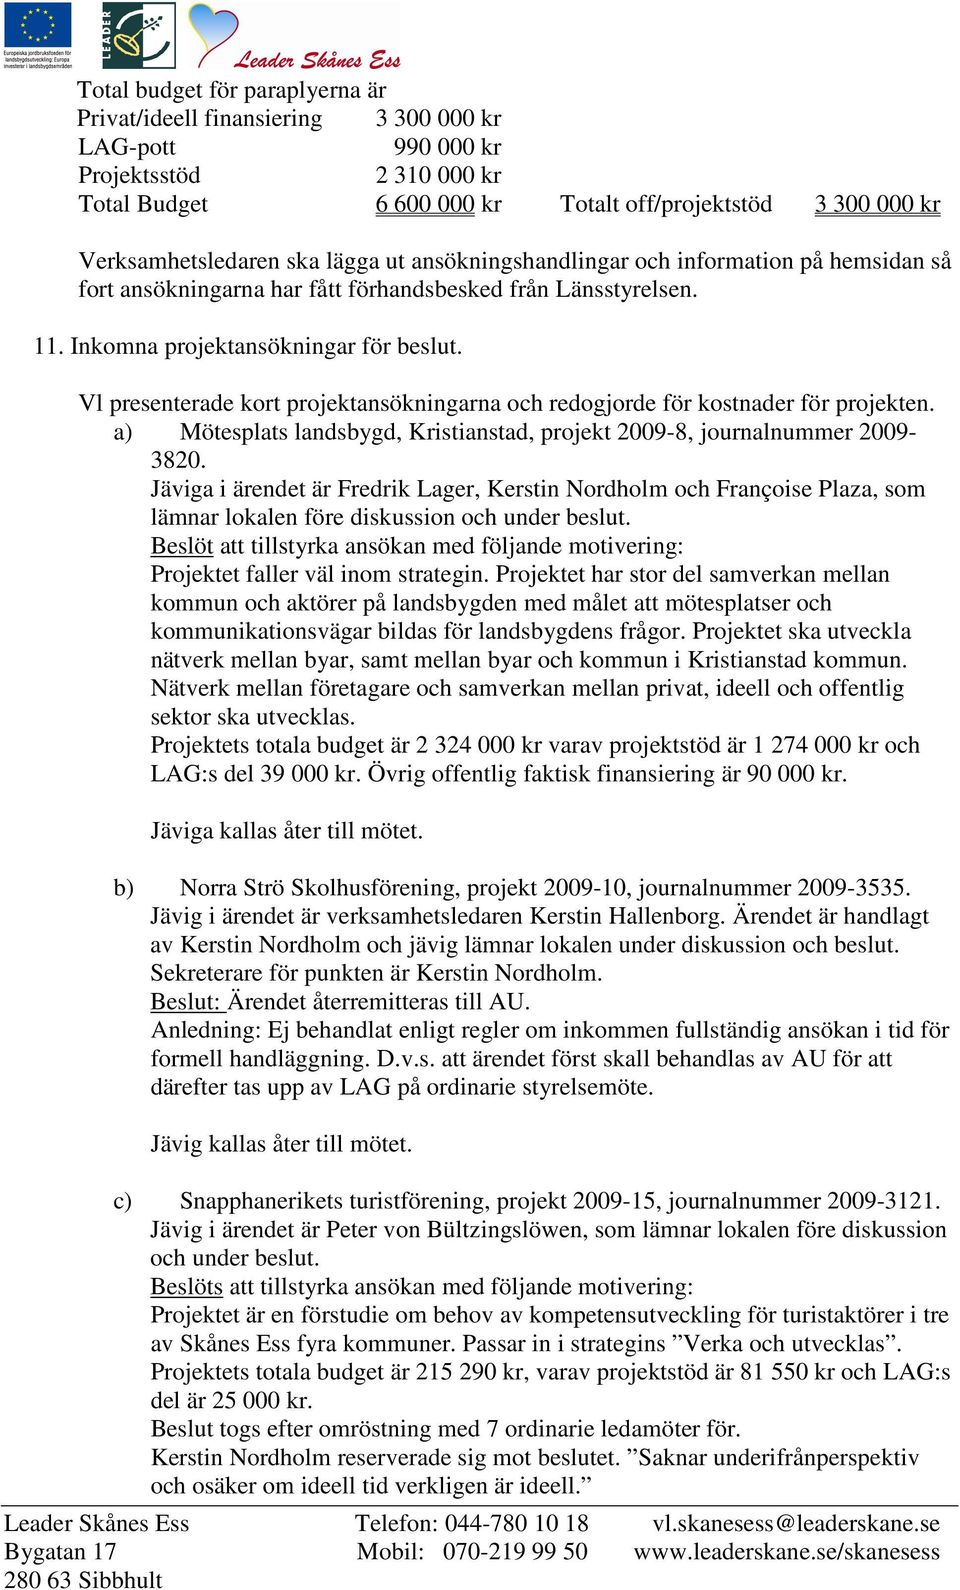 Vl presenterade kort projektansökningarna och redogjorde för kostnader för projekten. a) Mötesplats landsbygd, Kristianstad, projekt 2009-8, journalnummer 2009-3820.